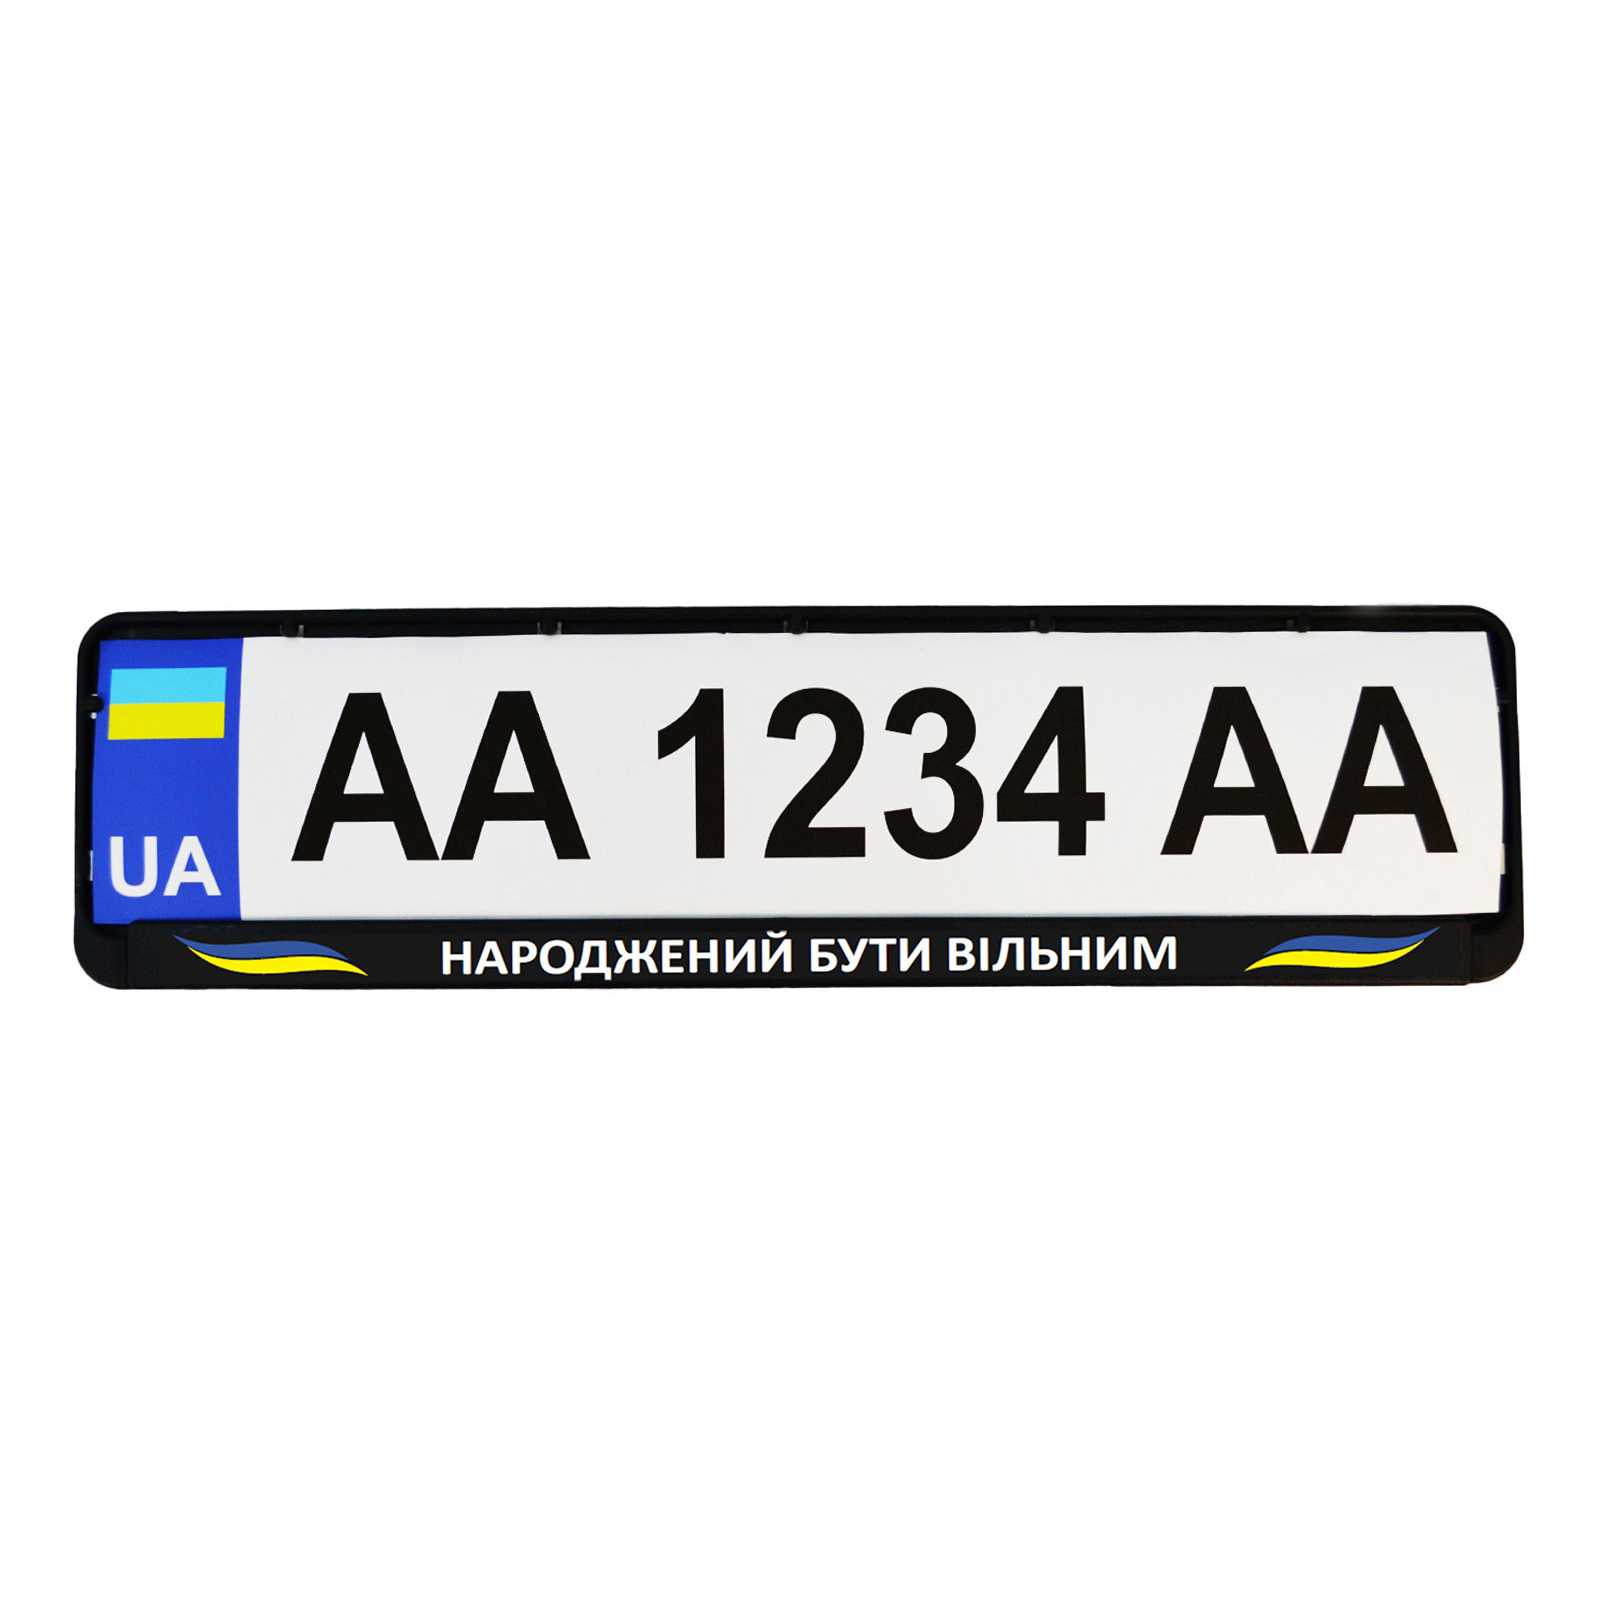 Рамка номерного знака Poputchik "НАРОДЖЕНИЙ БУТИ ВІЛЬНИМ" (24-270-IS) зображення 2